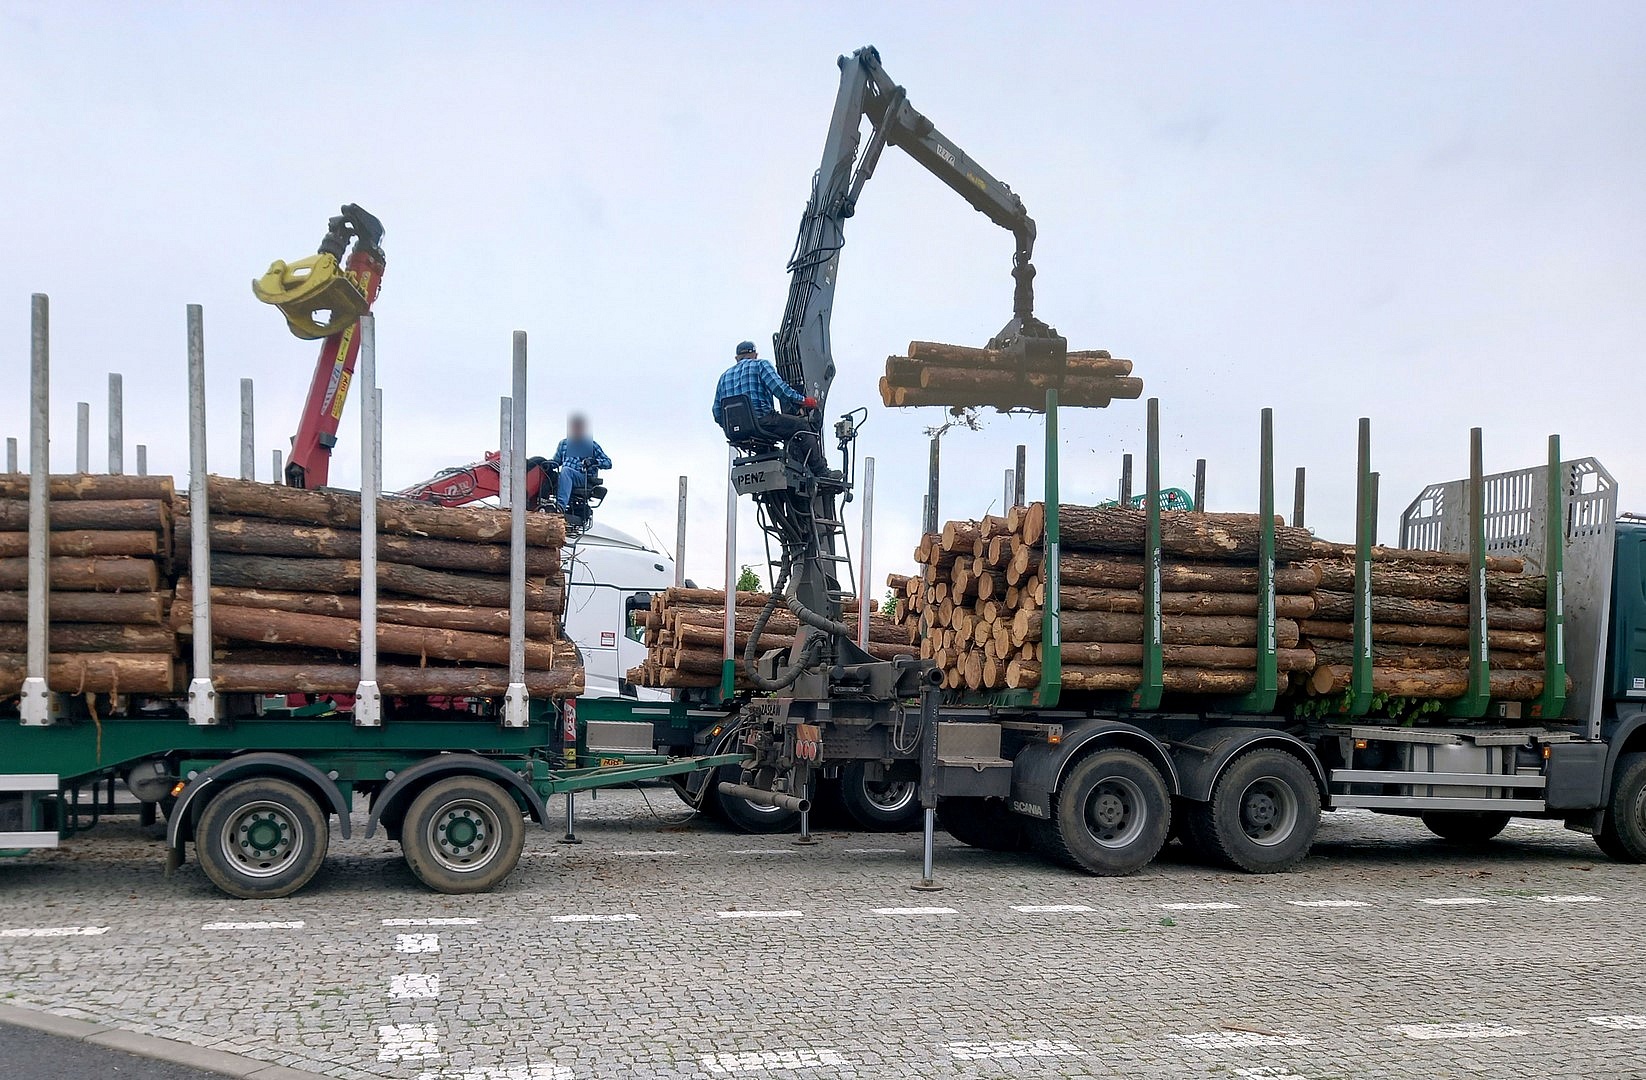 Prawie 65 ton drewna na ciężarówce! Przewoźnik może zapłacić nawet 32 tys. zł kary!